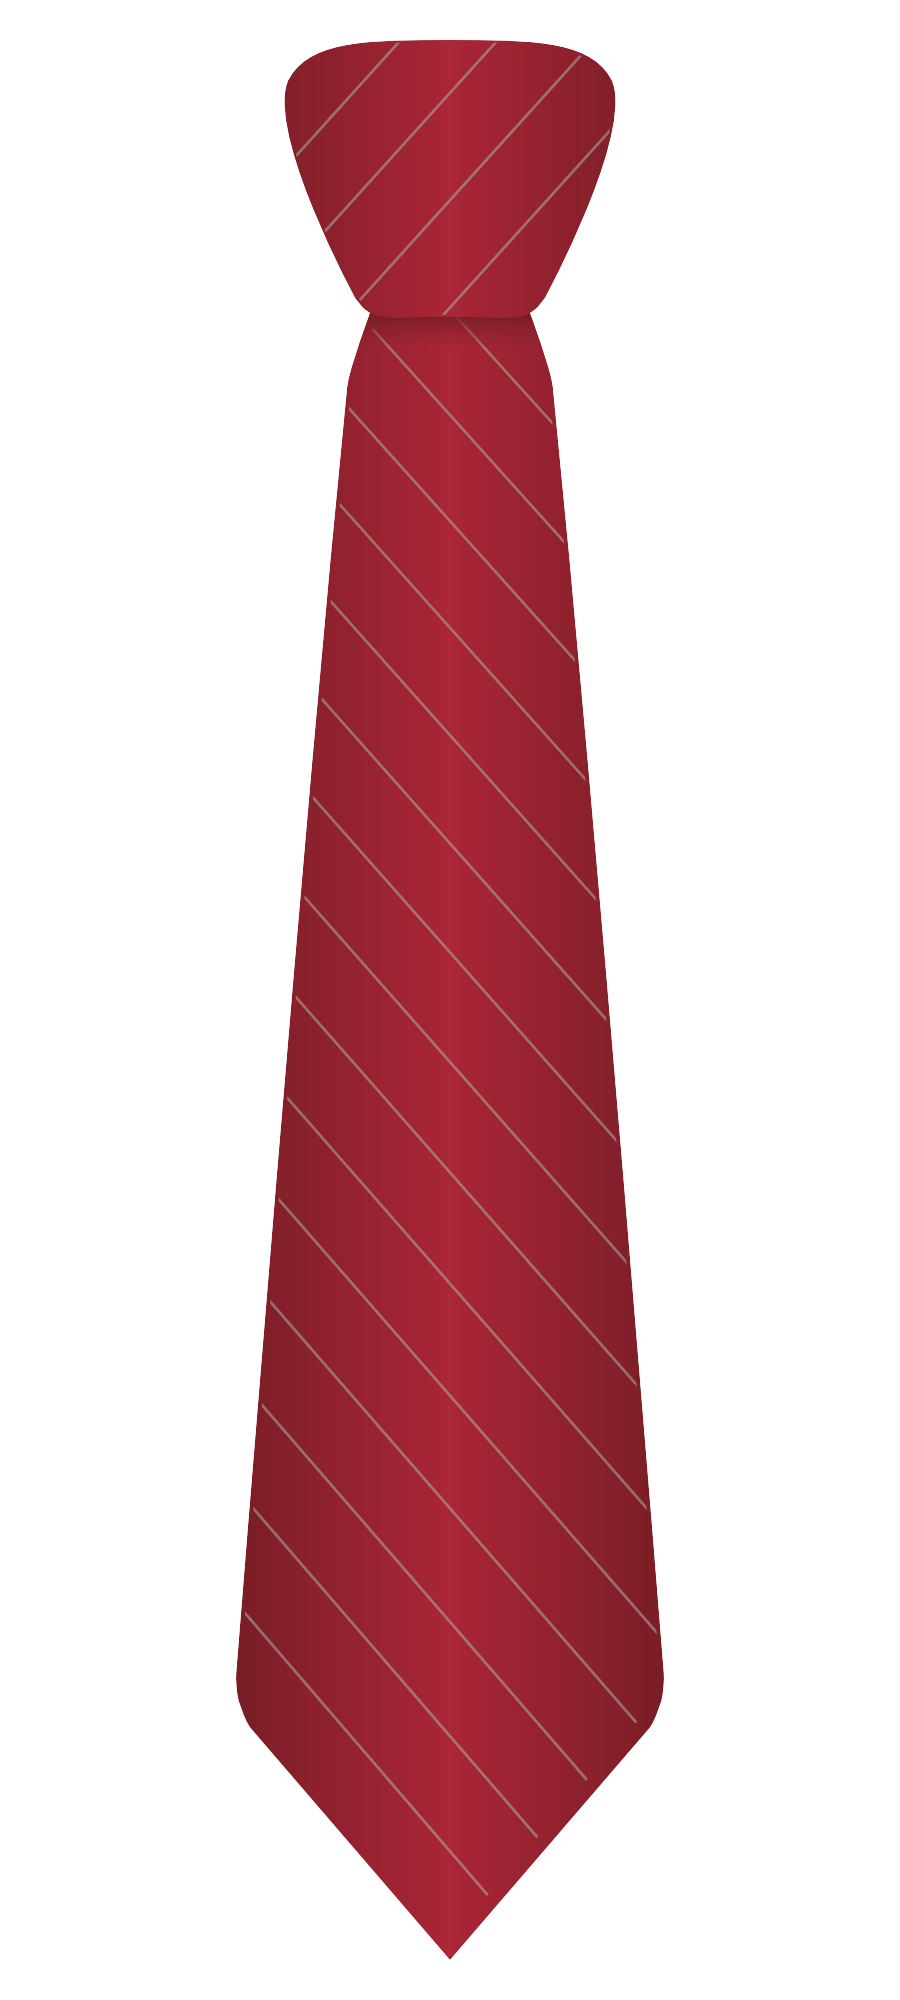 Necktie Png Transparent Image - Tie, Transparent background PNG HD thumbnail